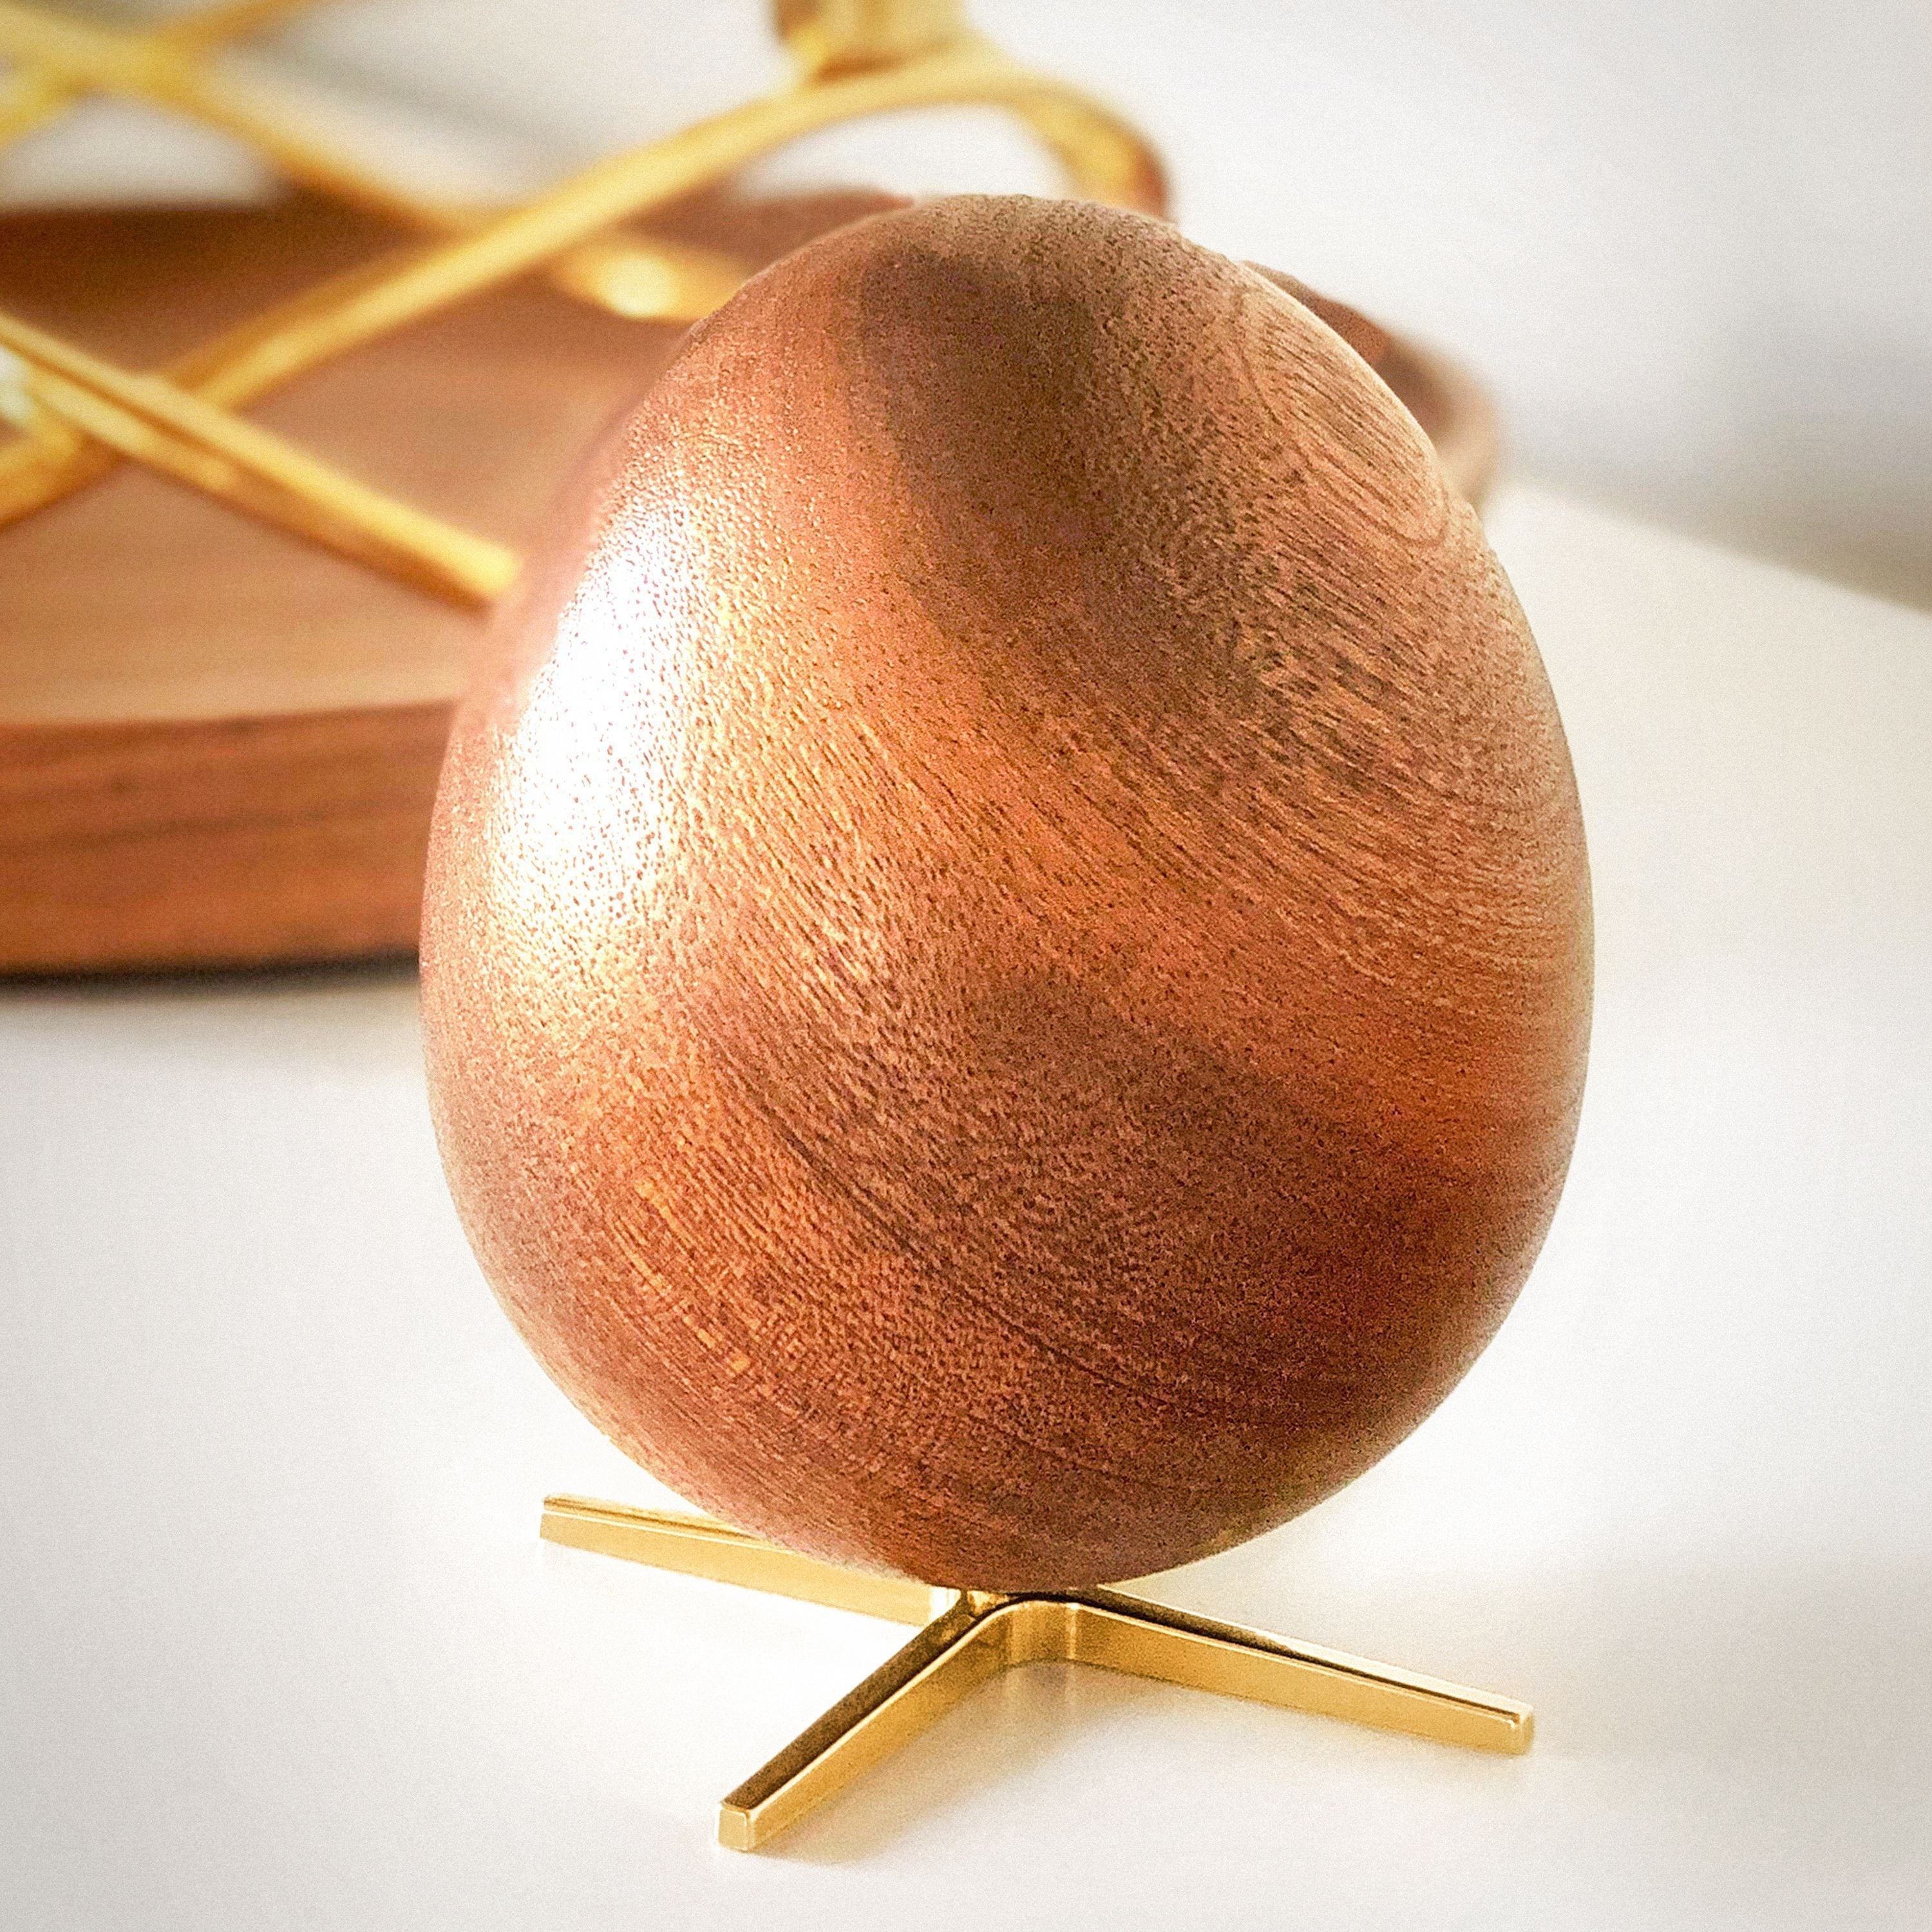 Brainchild the uovo in legno in mogano, piede d'argento